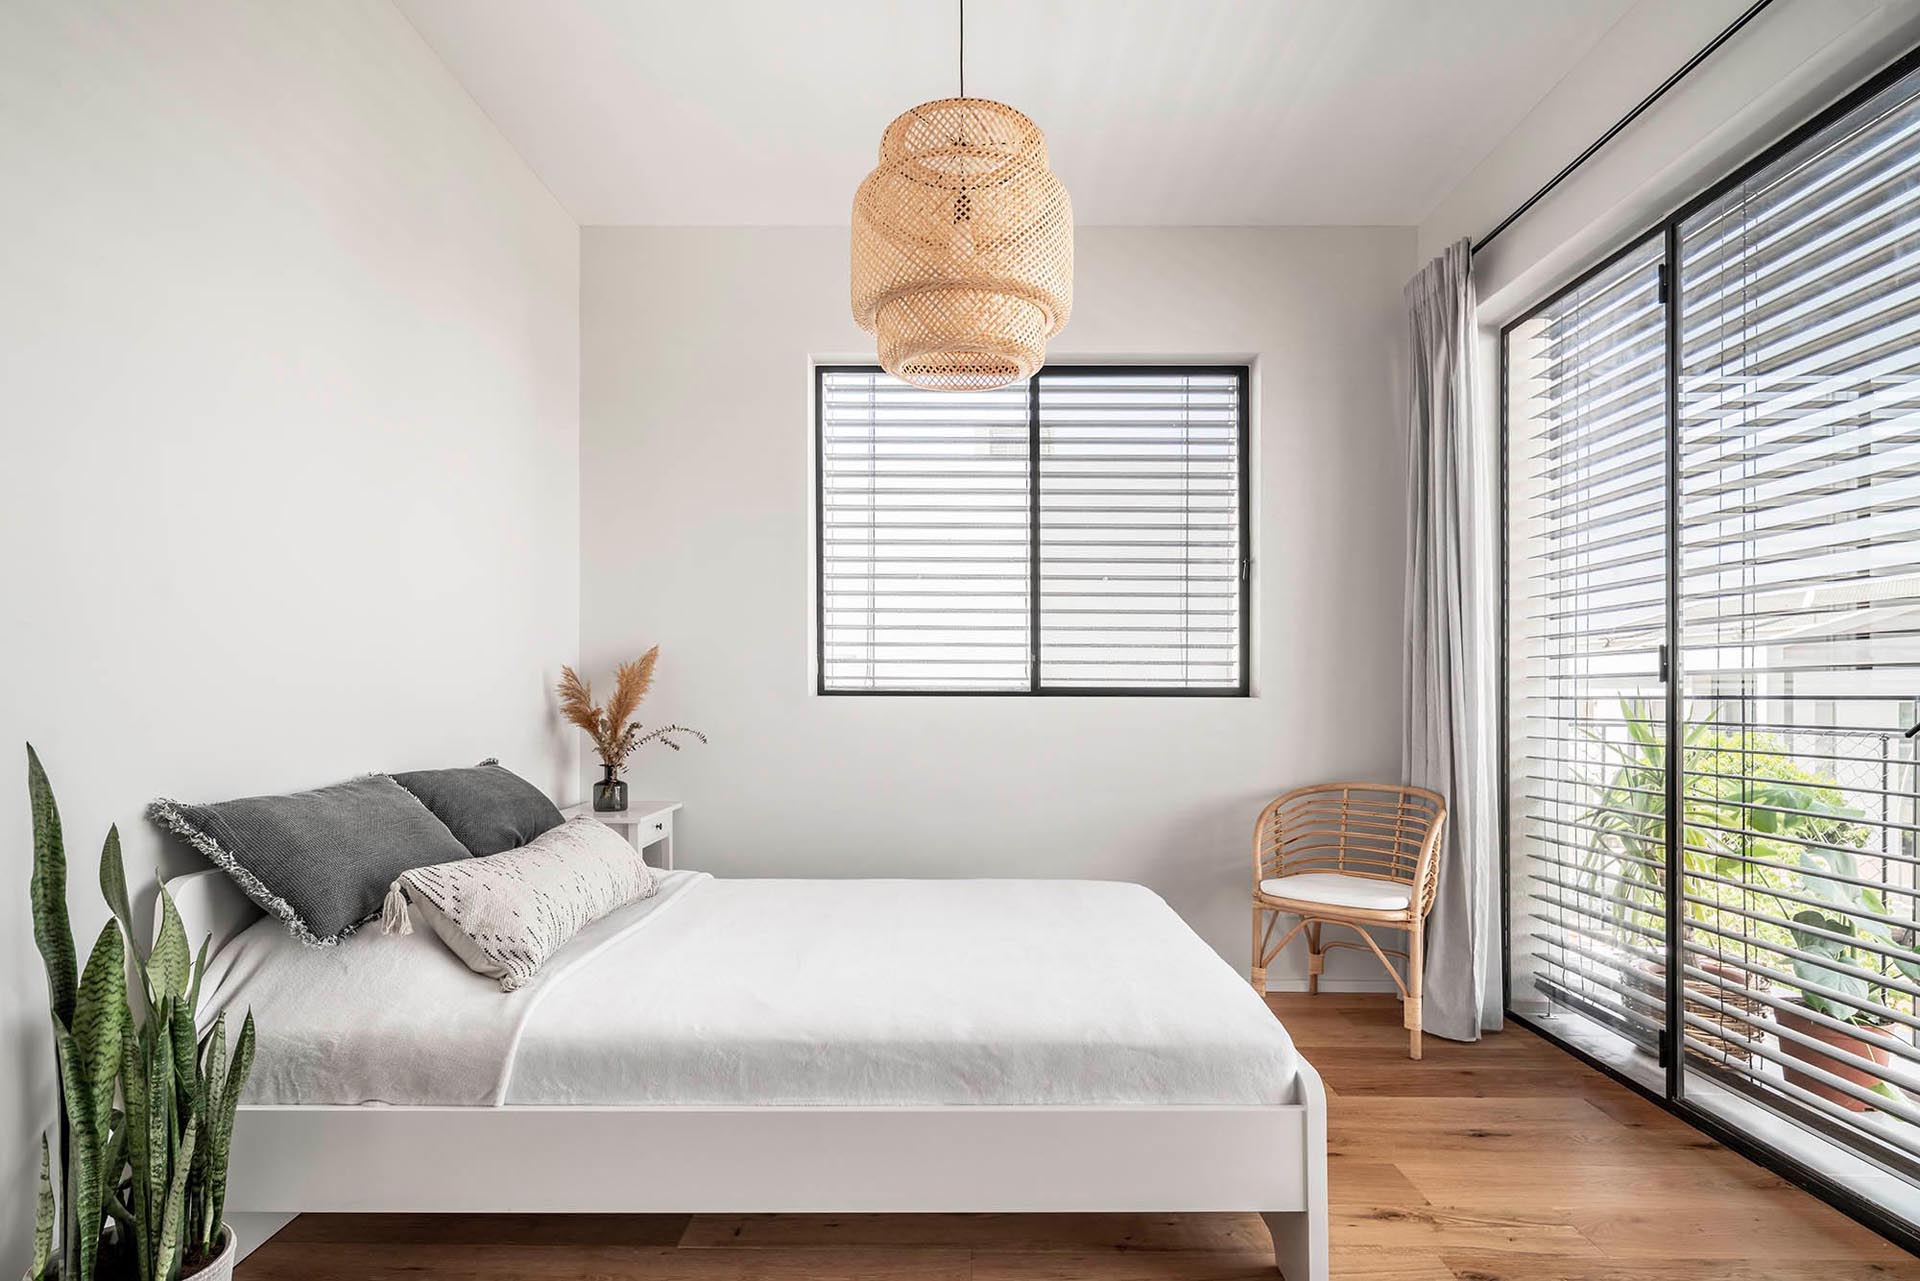 Эта современная спальня проста и ярка, со светлыми стенами, деревянными элементами декора и растениями.